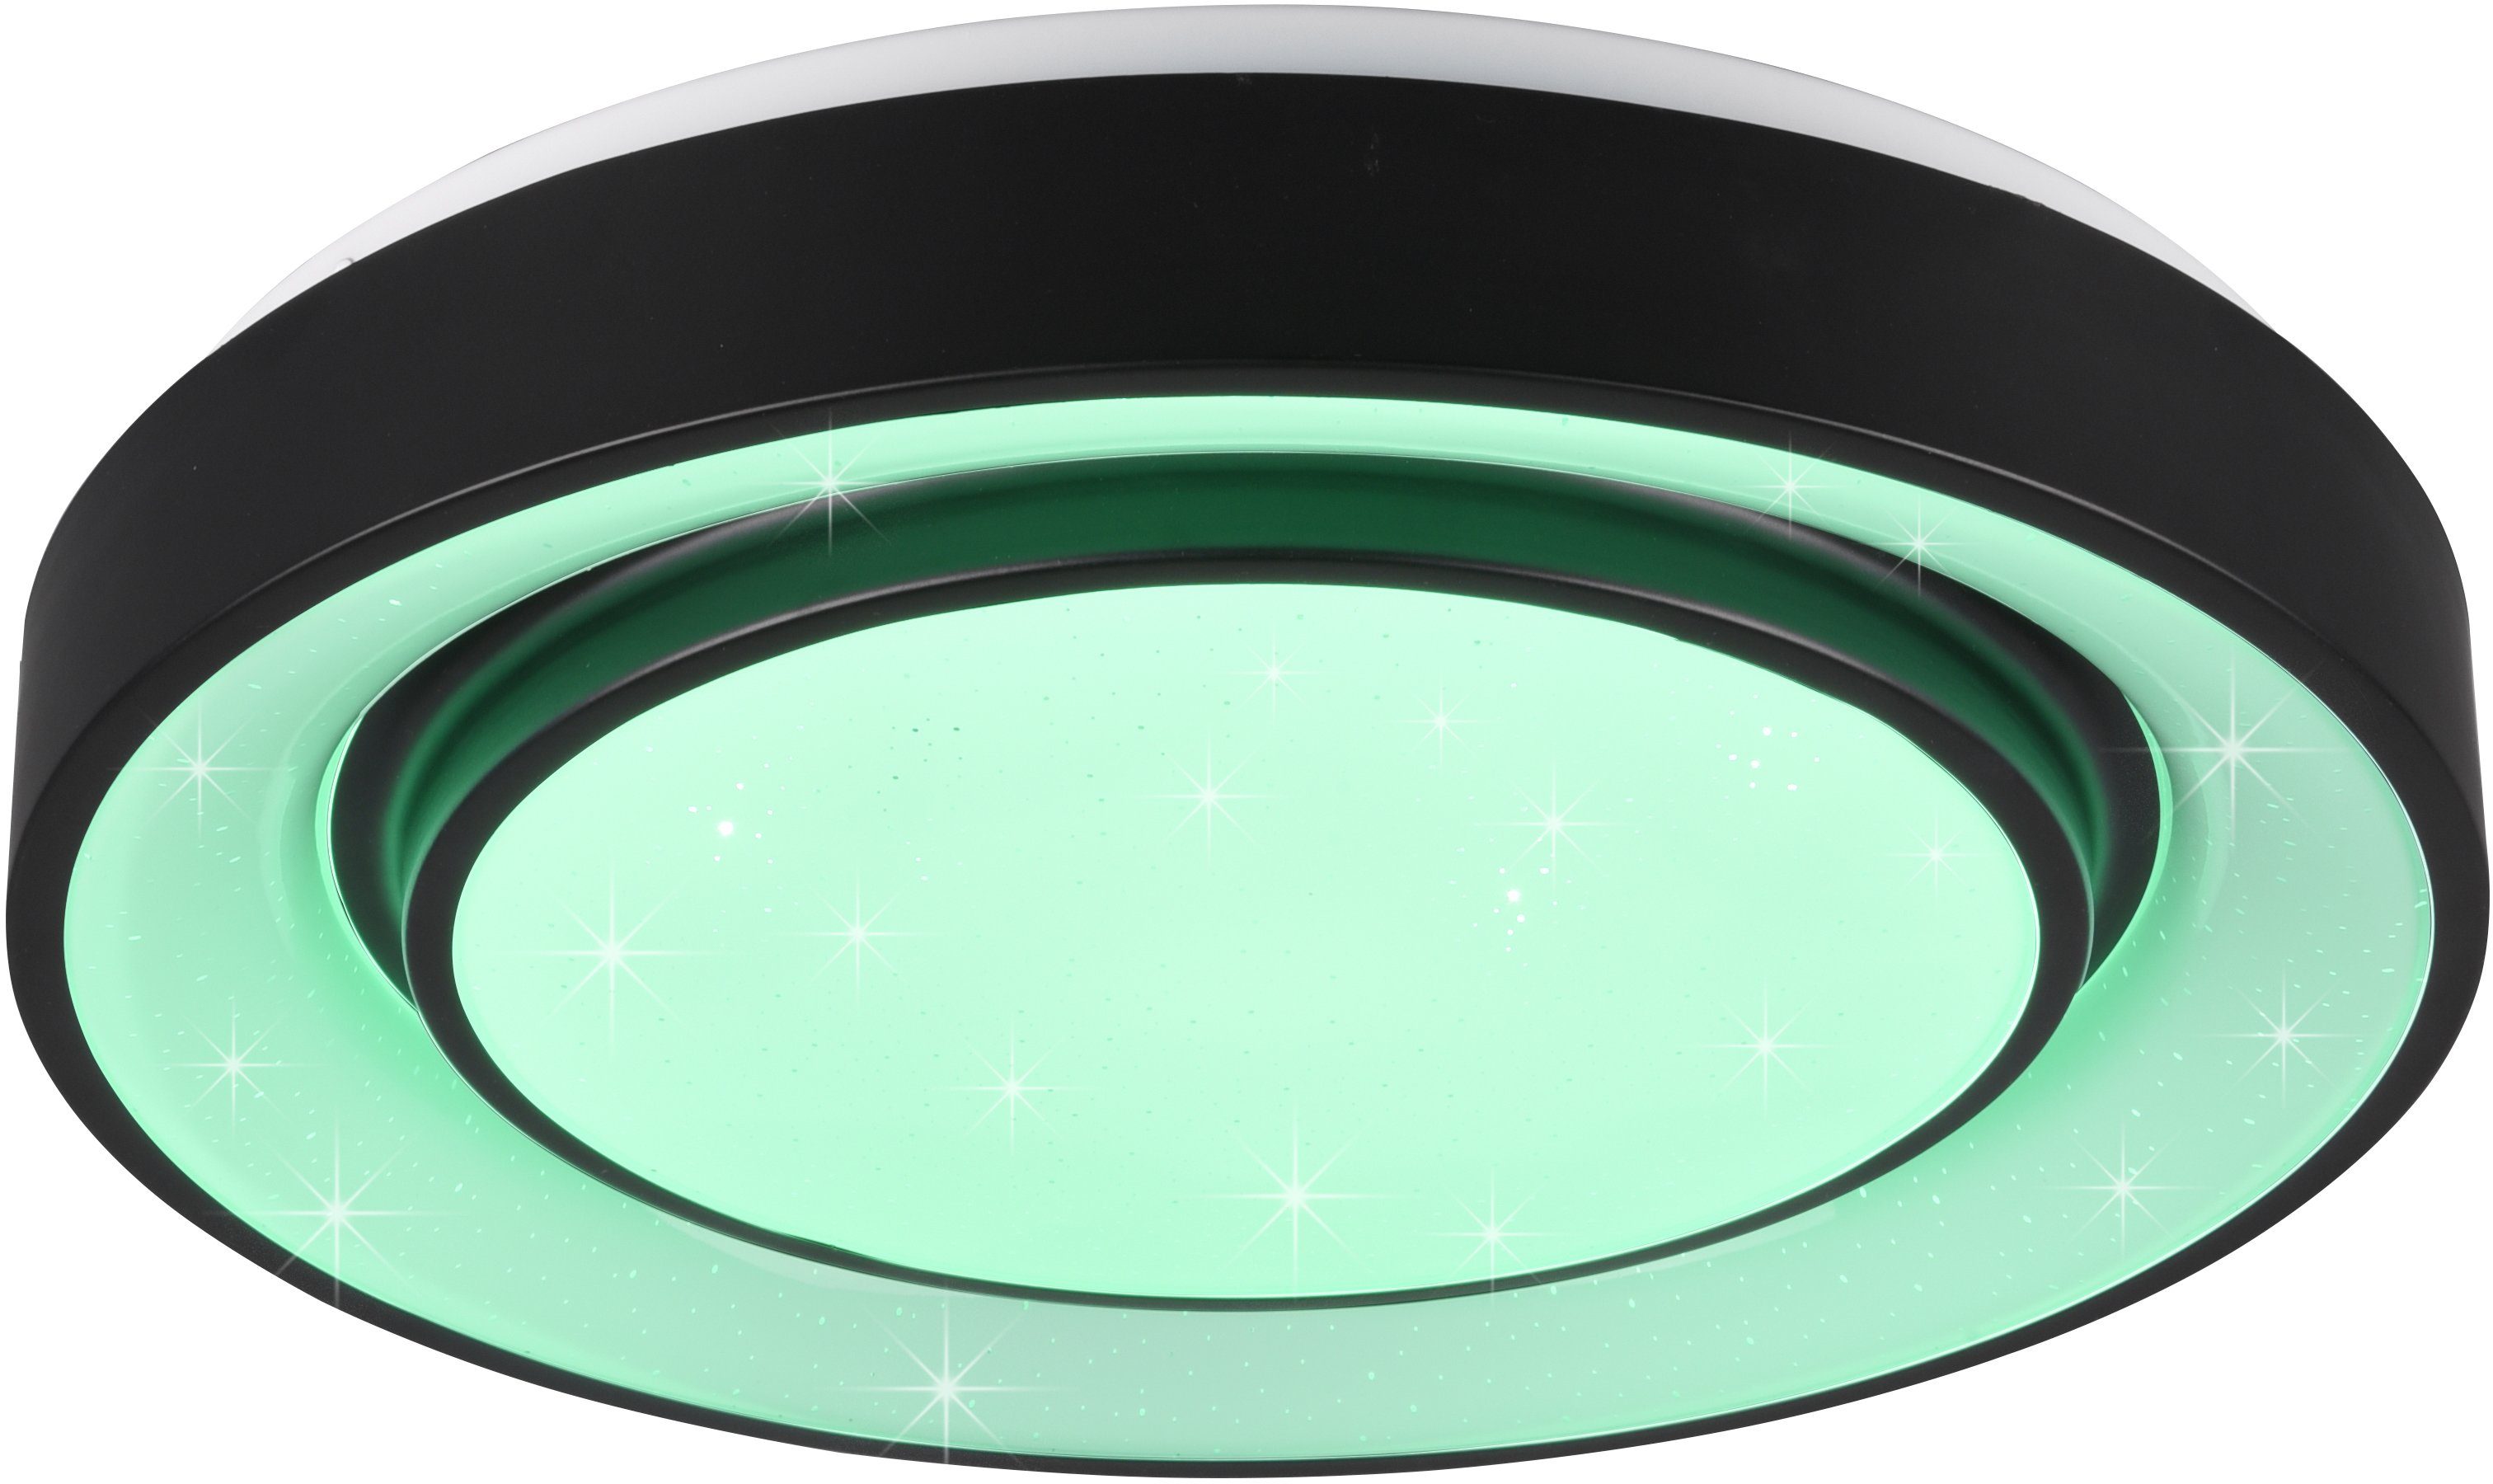 TRIO Leuchten Nachtlichtfunktion, fest Deckenleuchte mehrere Starlight-Effekt, LED LED Farbwechsel, Dimmer, integriert, Memoryfunktion, Farbwechsler, RGBW-Farbwechsler einstellbar, Mona, Lichtfarbe Helligkeitsstufen, stufenlos